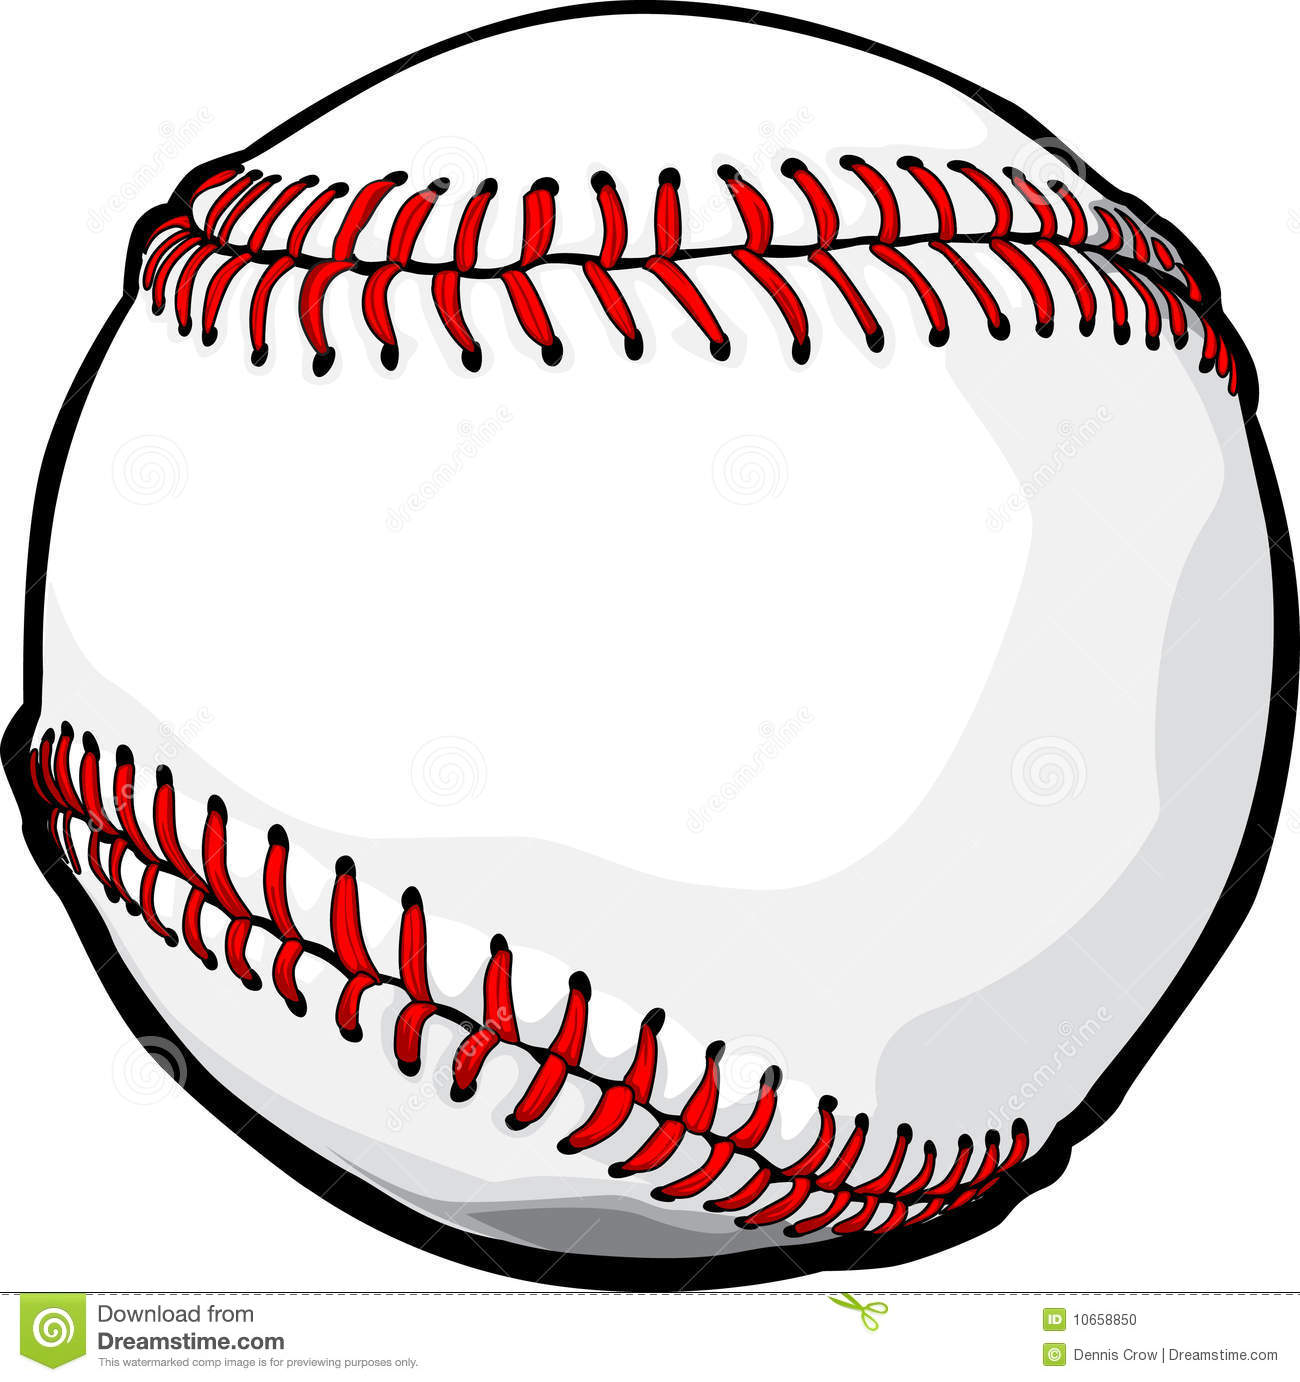 Vector Baseball Ball Image